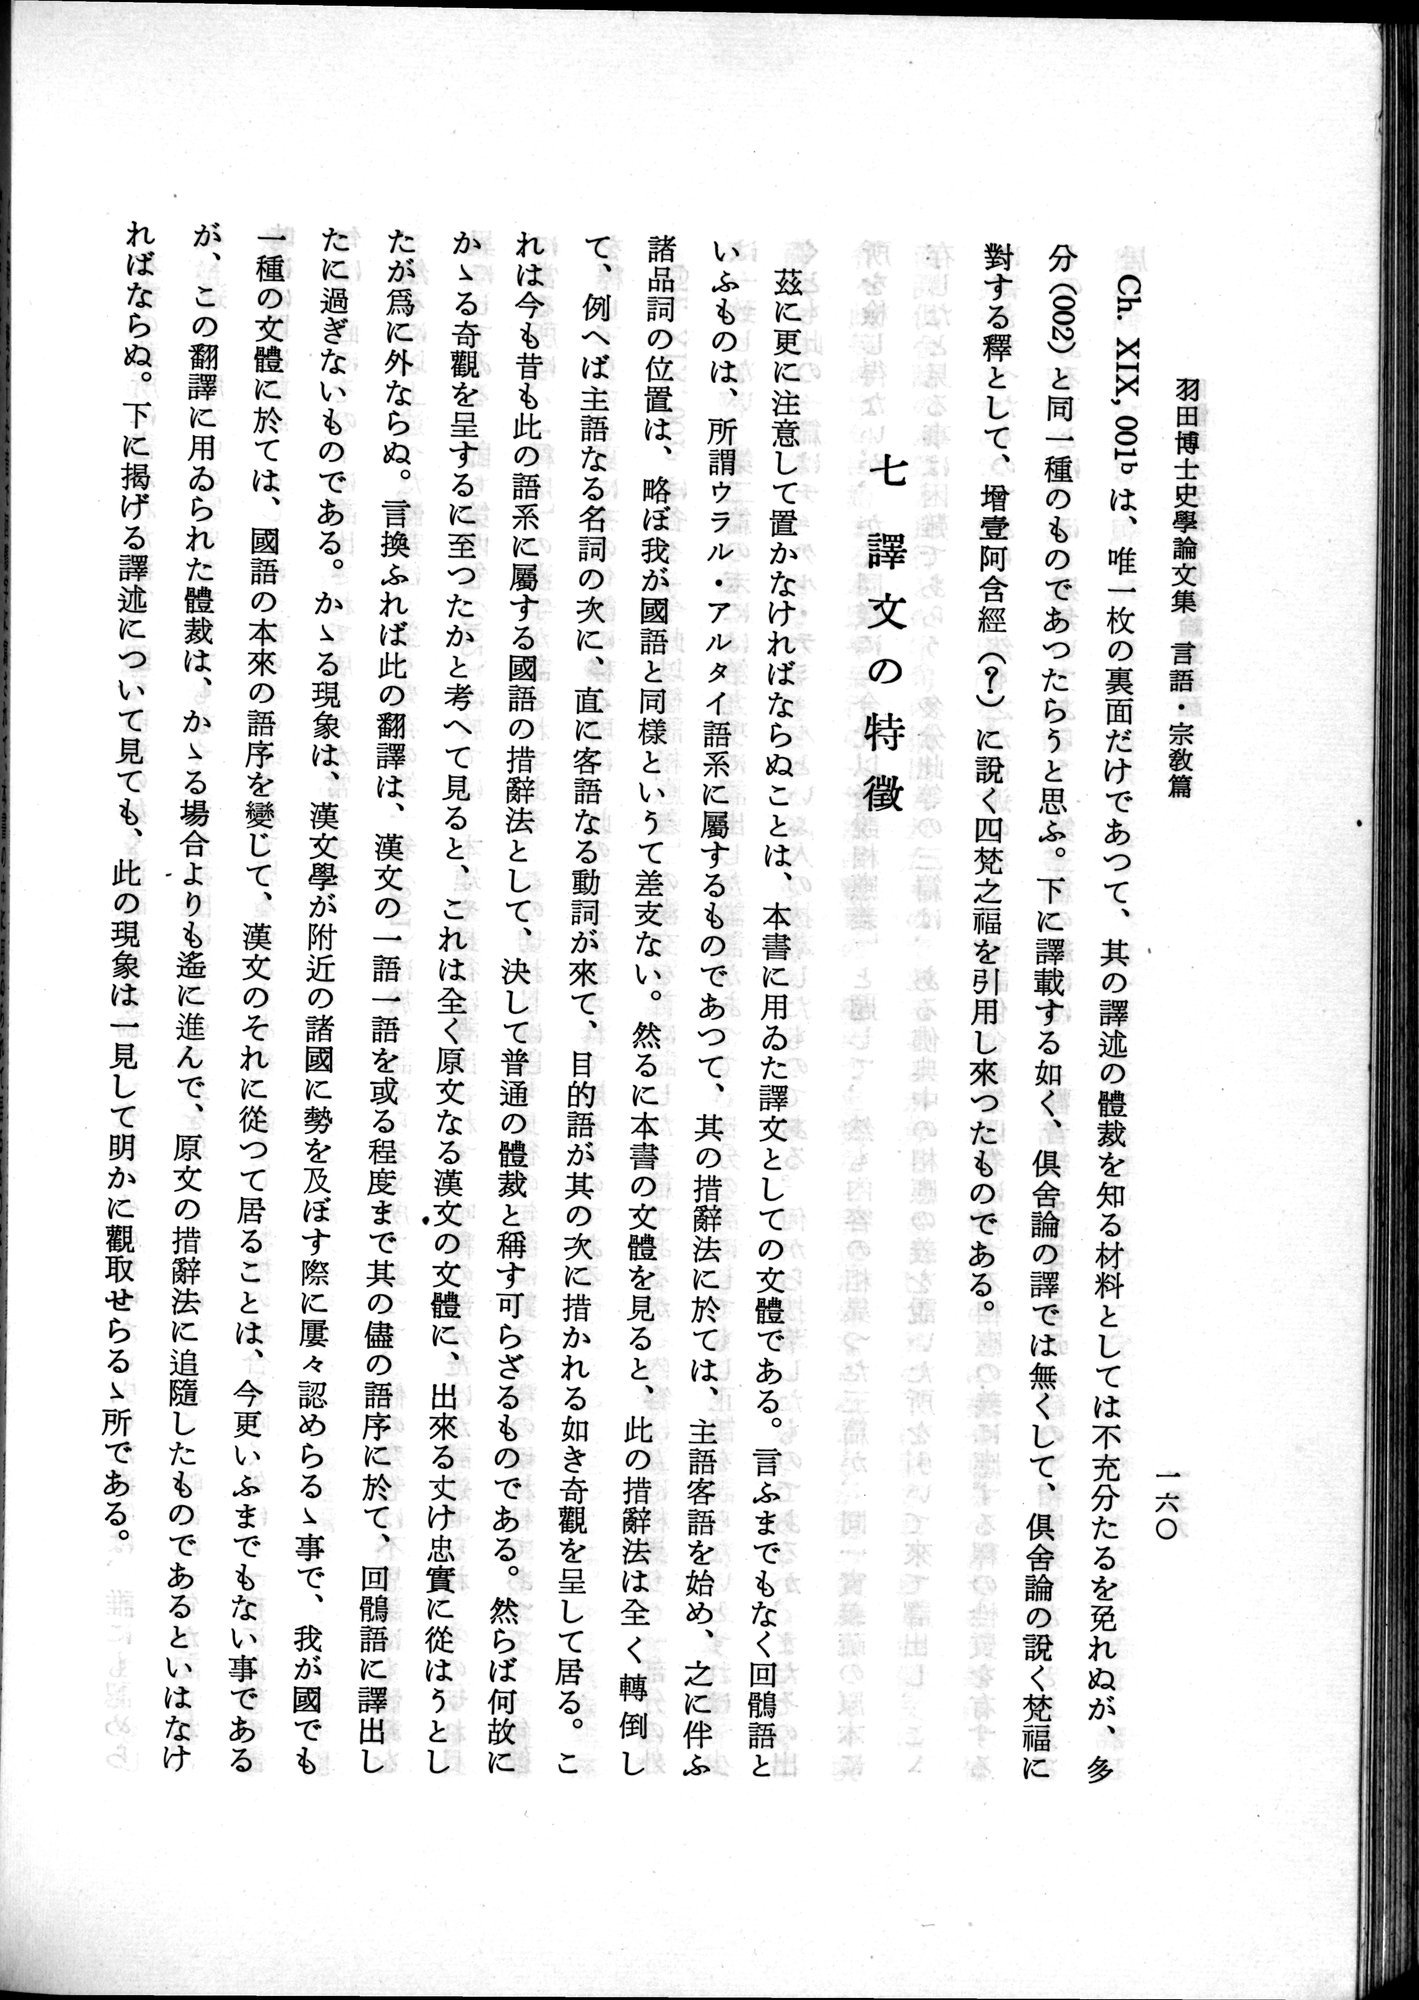 羽田博士史学論文集 : vol.2 / 222 ページ（白黒高解像度画像）